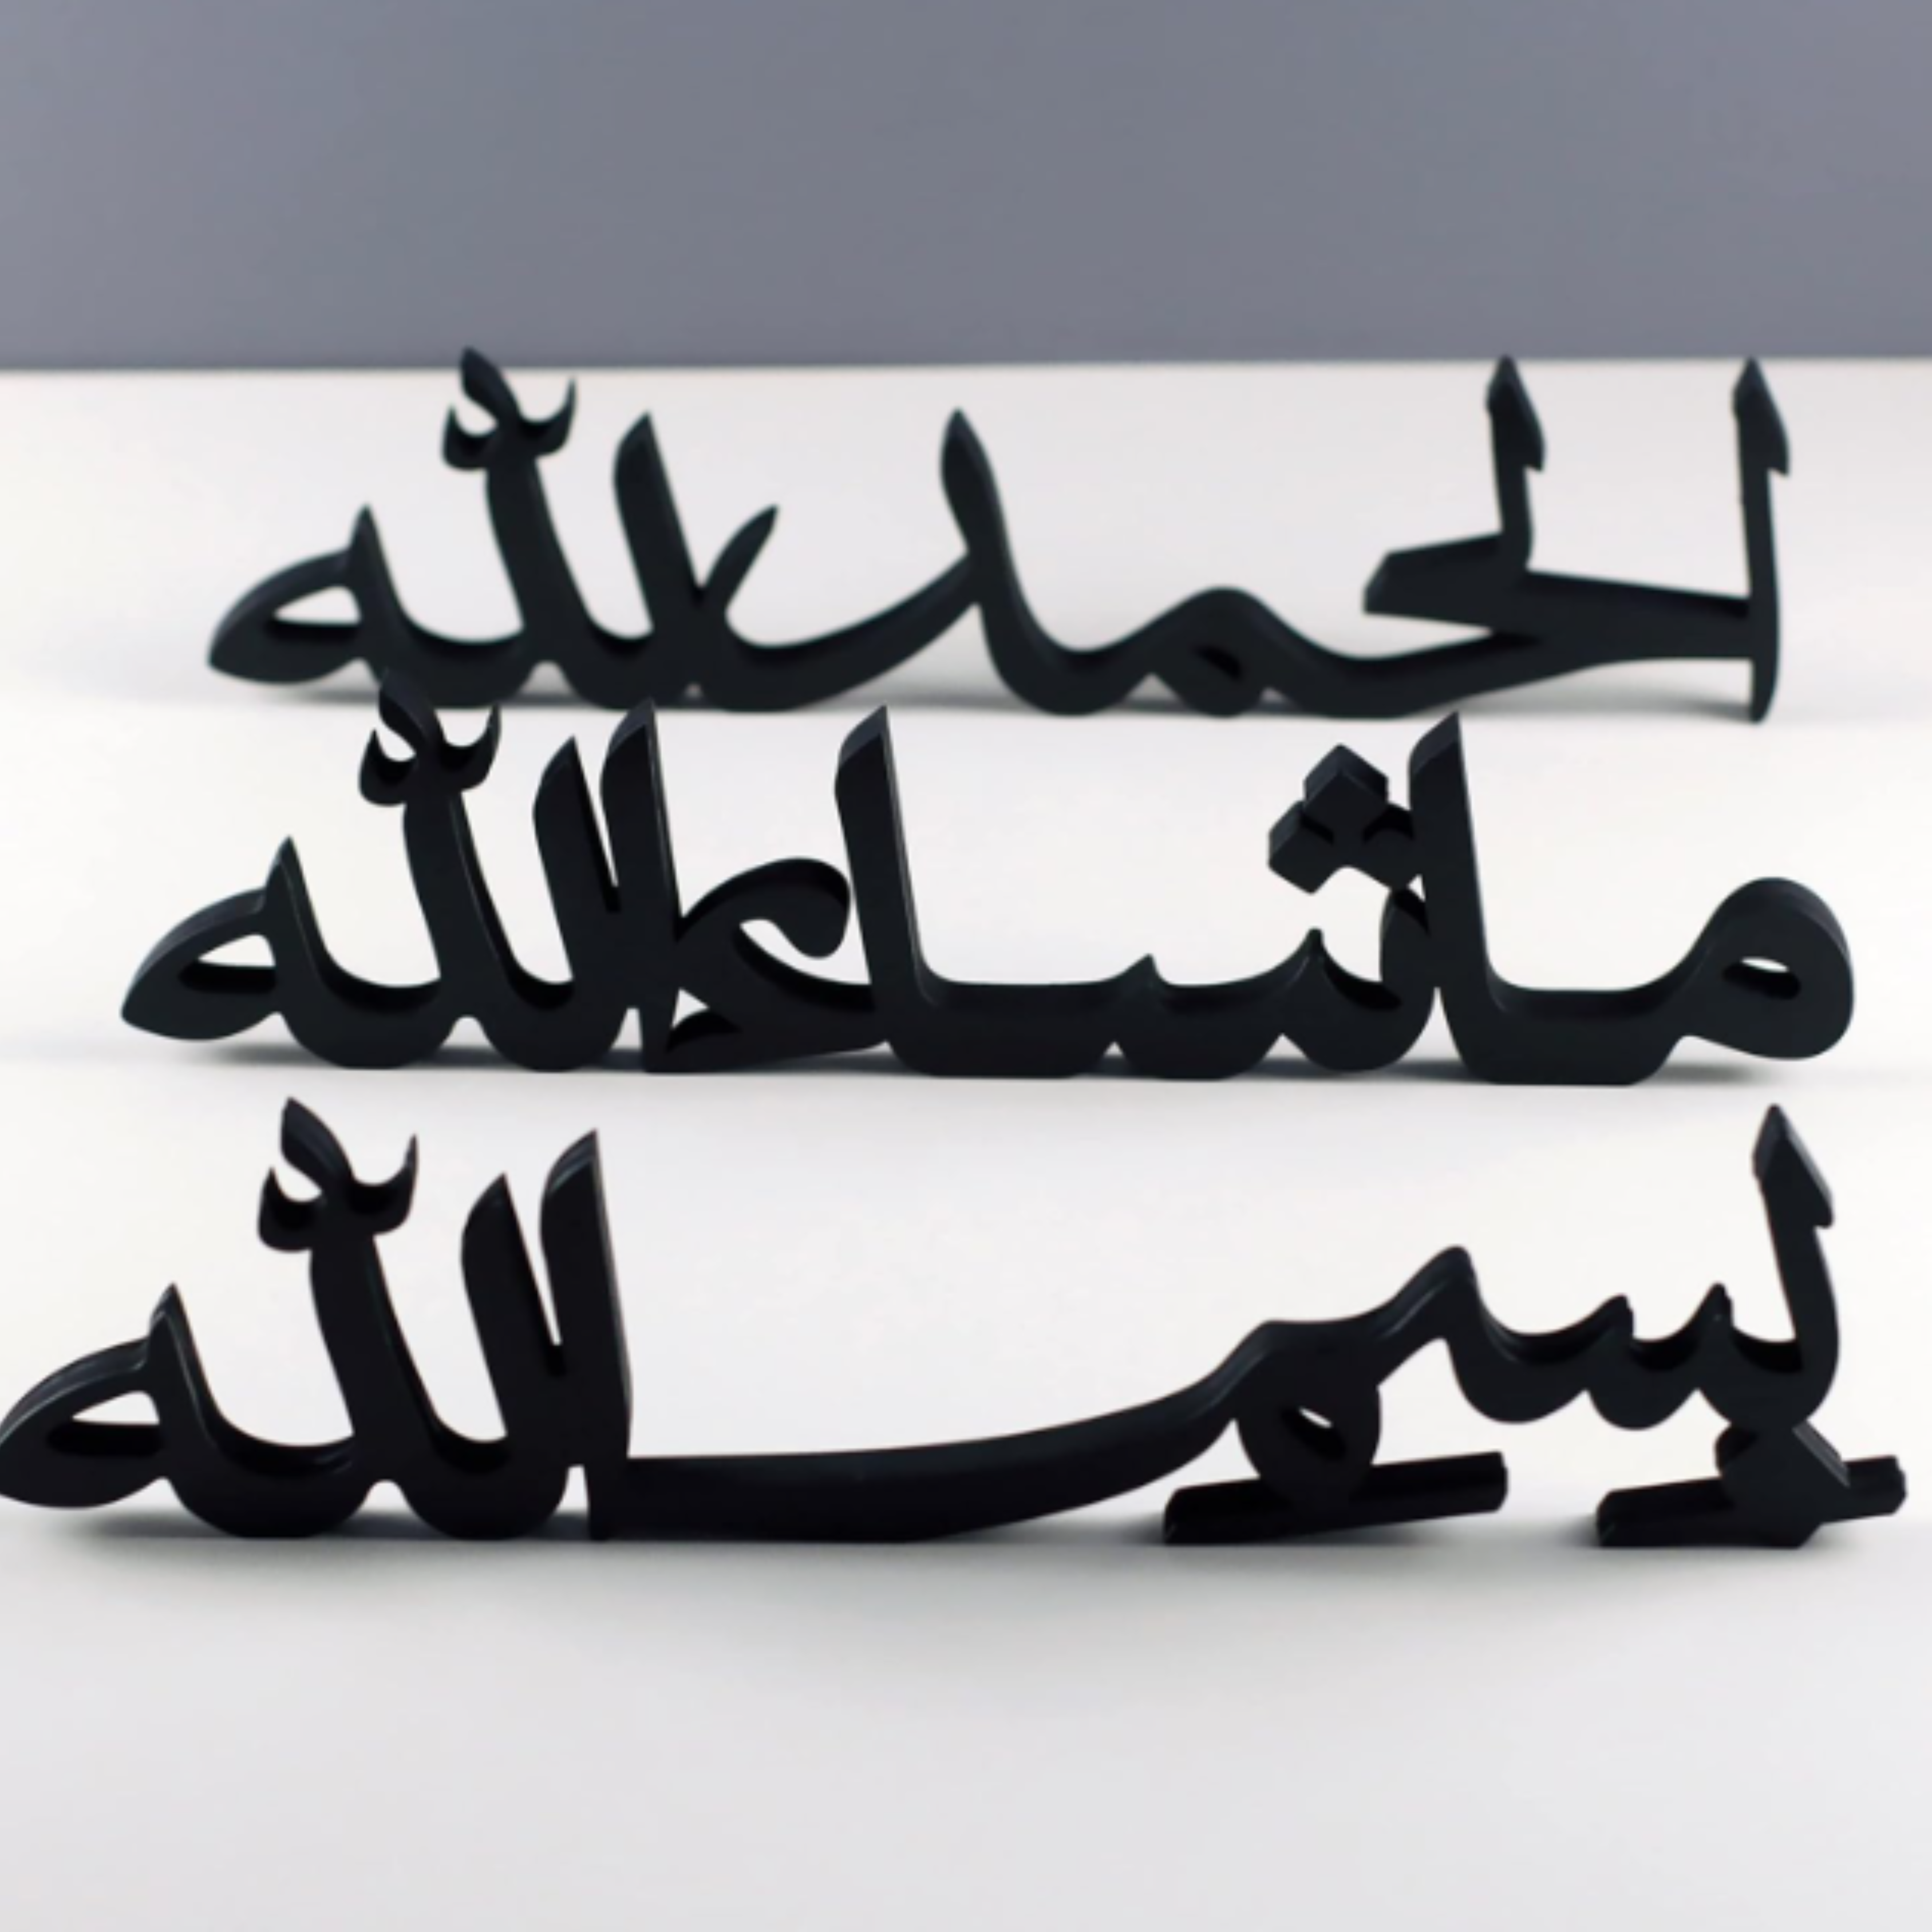 Alhamdulillah, Bismillah, Mashallah in Arabic Table Decor Set of 3 (Black)